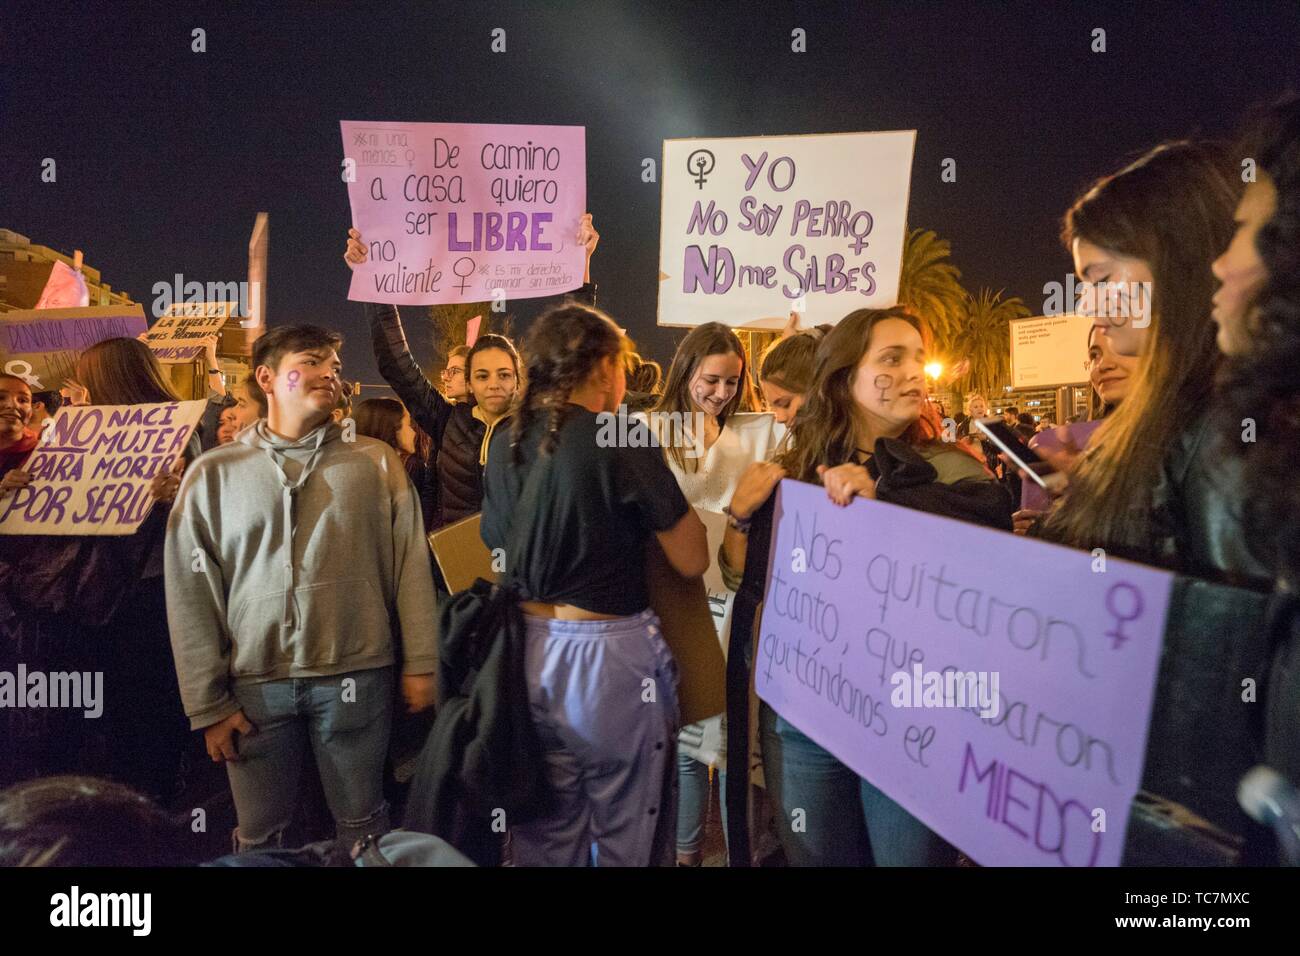 Valencia, España, 8 de marzo de 2019. Las calles de Valencia se llenan de gente que gritaba en favor del feminismo y enfrentando las agresiones machista. Foto de stock